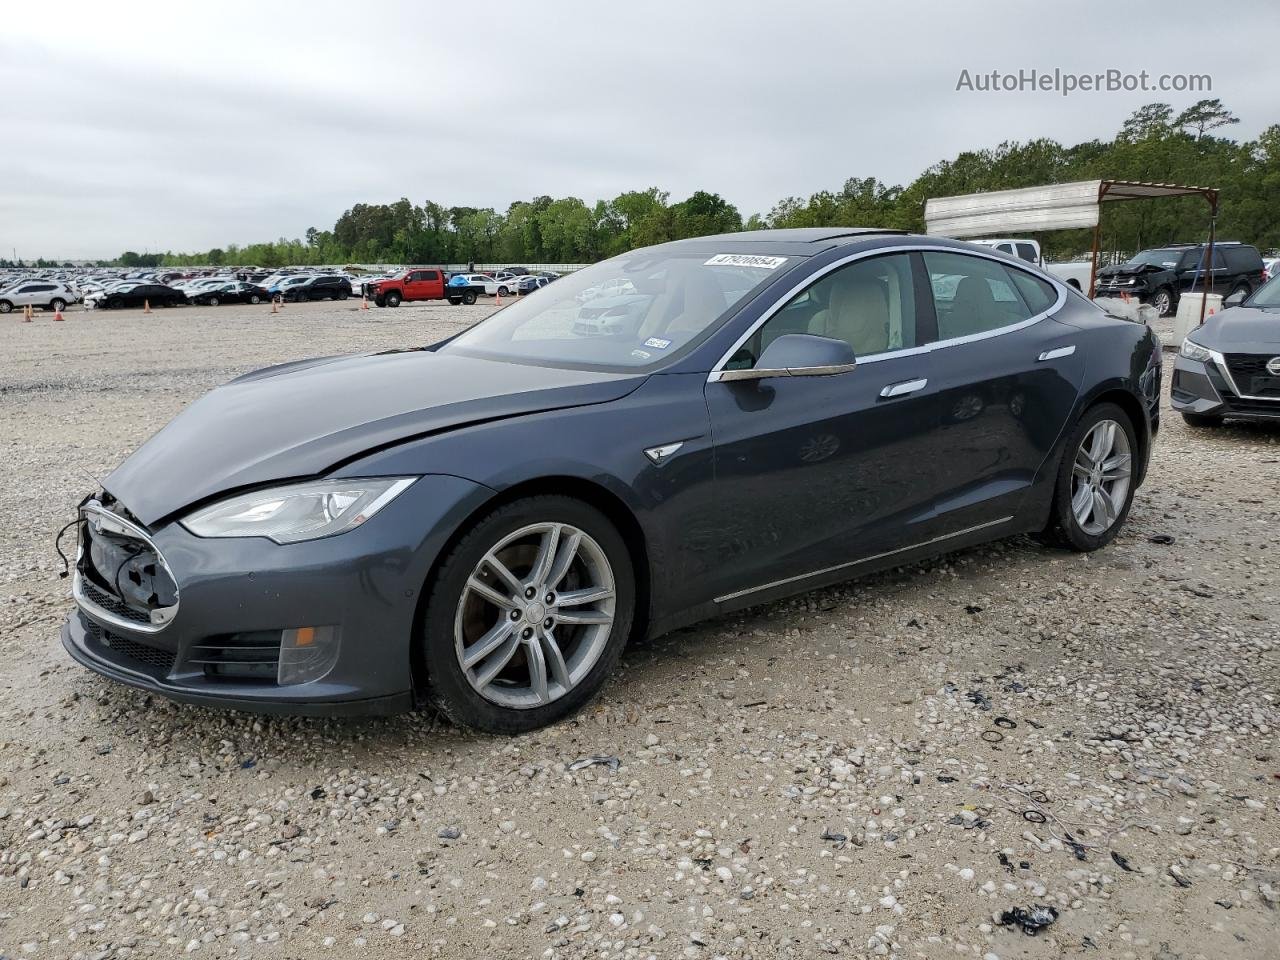 2015 Tesla Model S  Gray vin: 5YJSA1E22FF119765